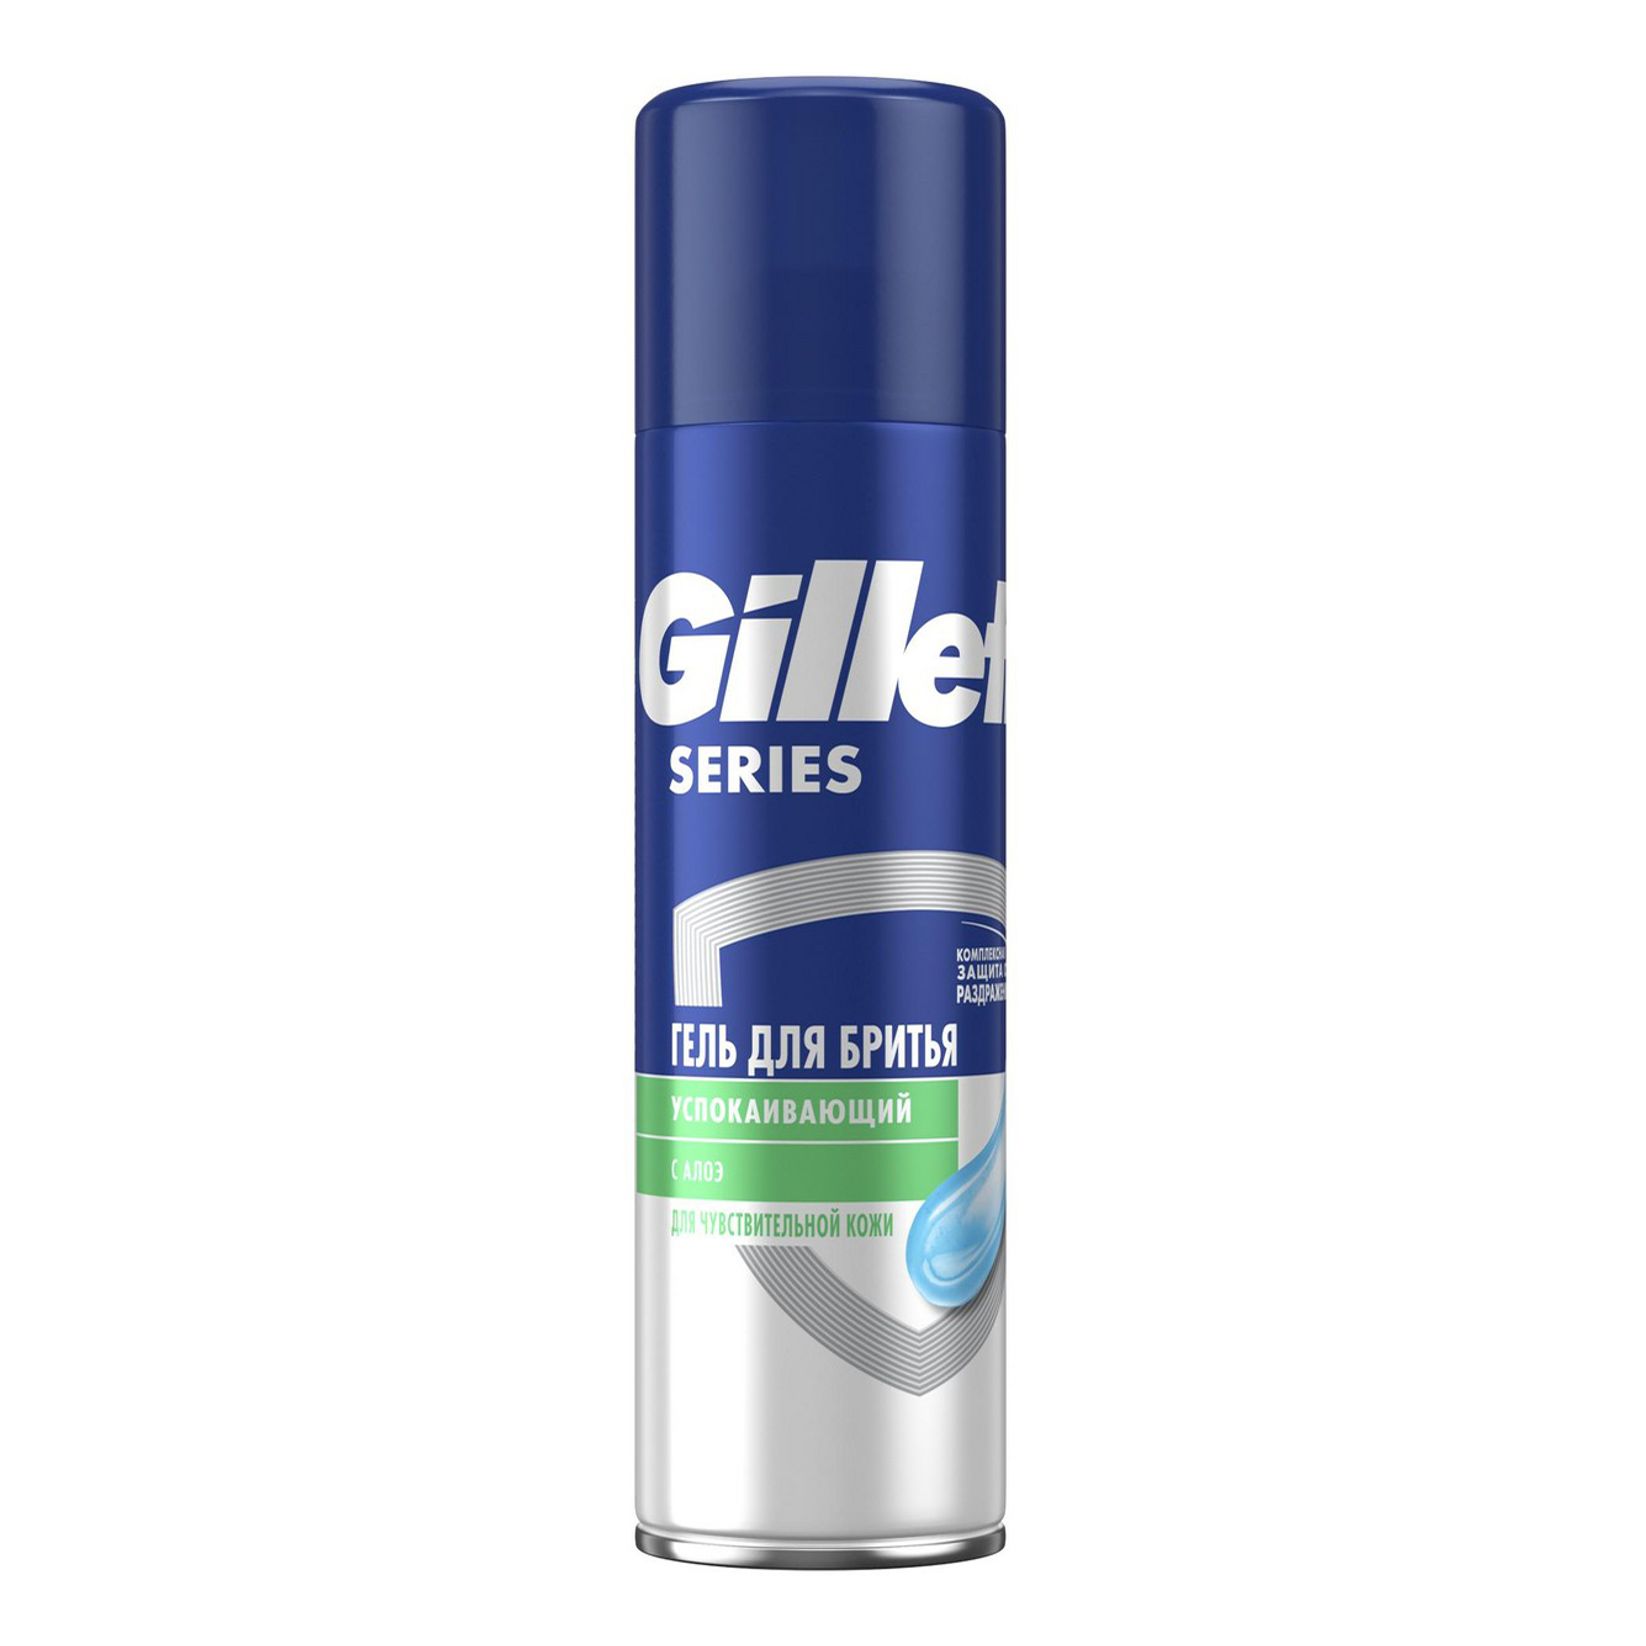 GILLETTE TGS Sensitive Skin, Гель для бритья для чувствительной кожи 200мл